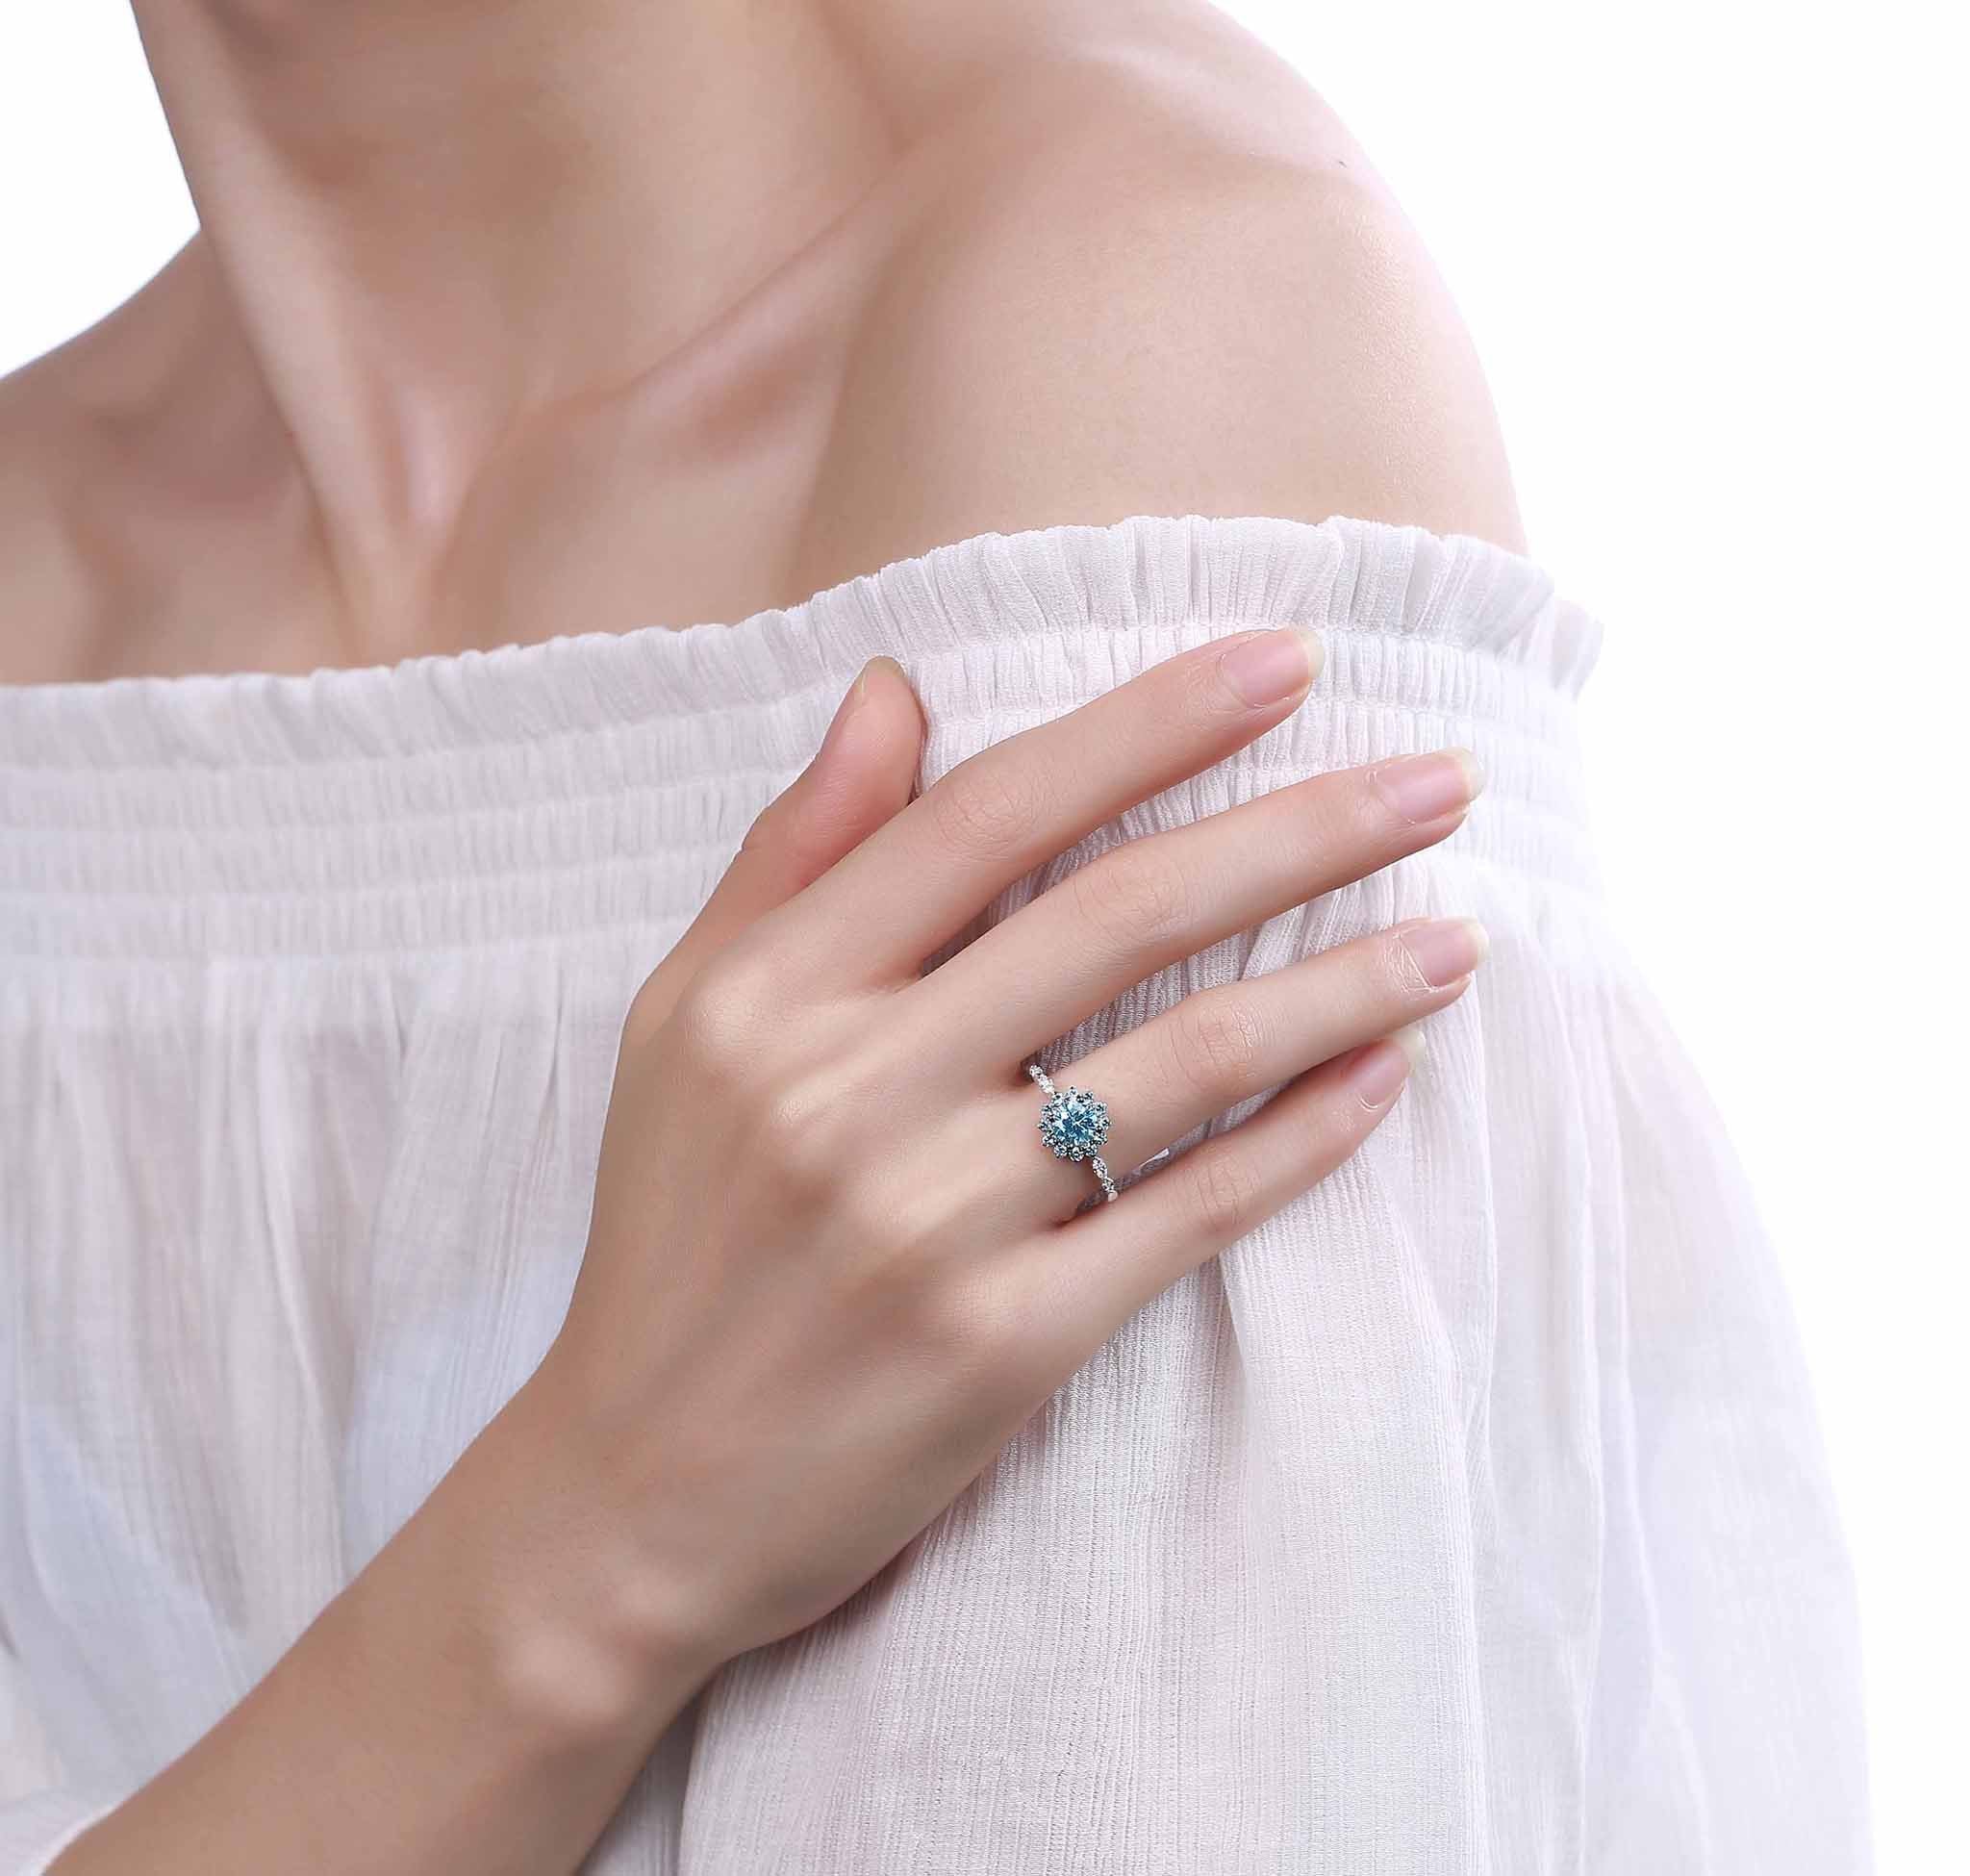 Smiling Rocks Lab Grown Diamond Blush Blue Flower Halo Ring in 10K 1.13ctw White Gold 